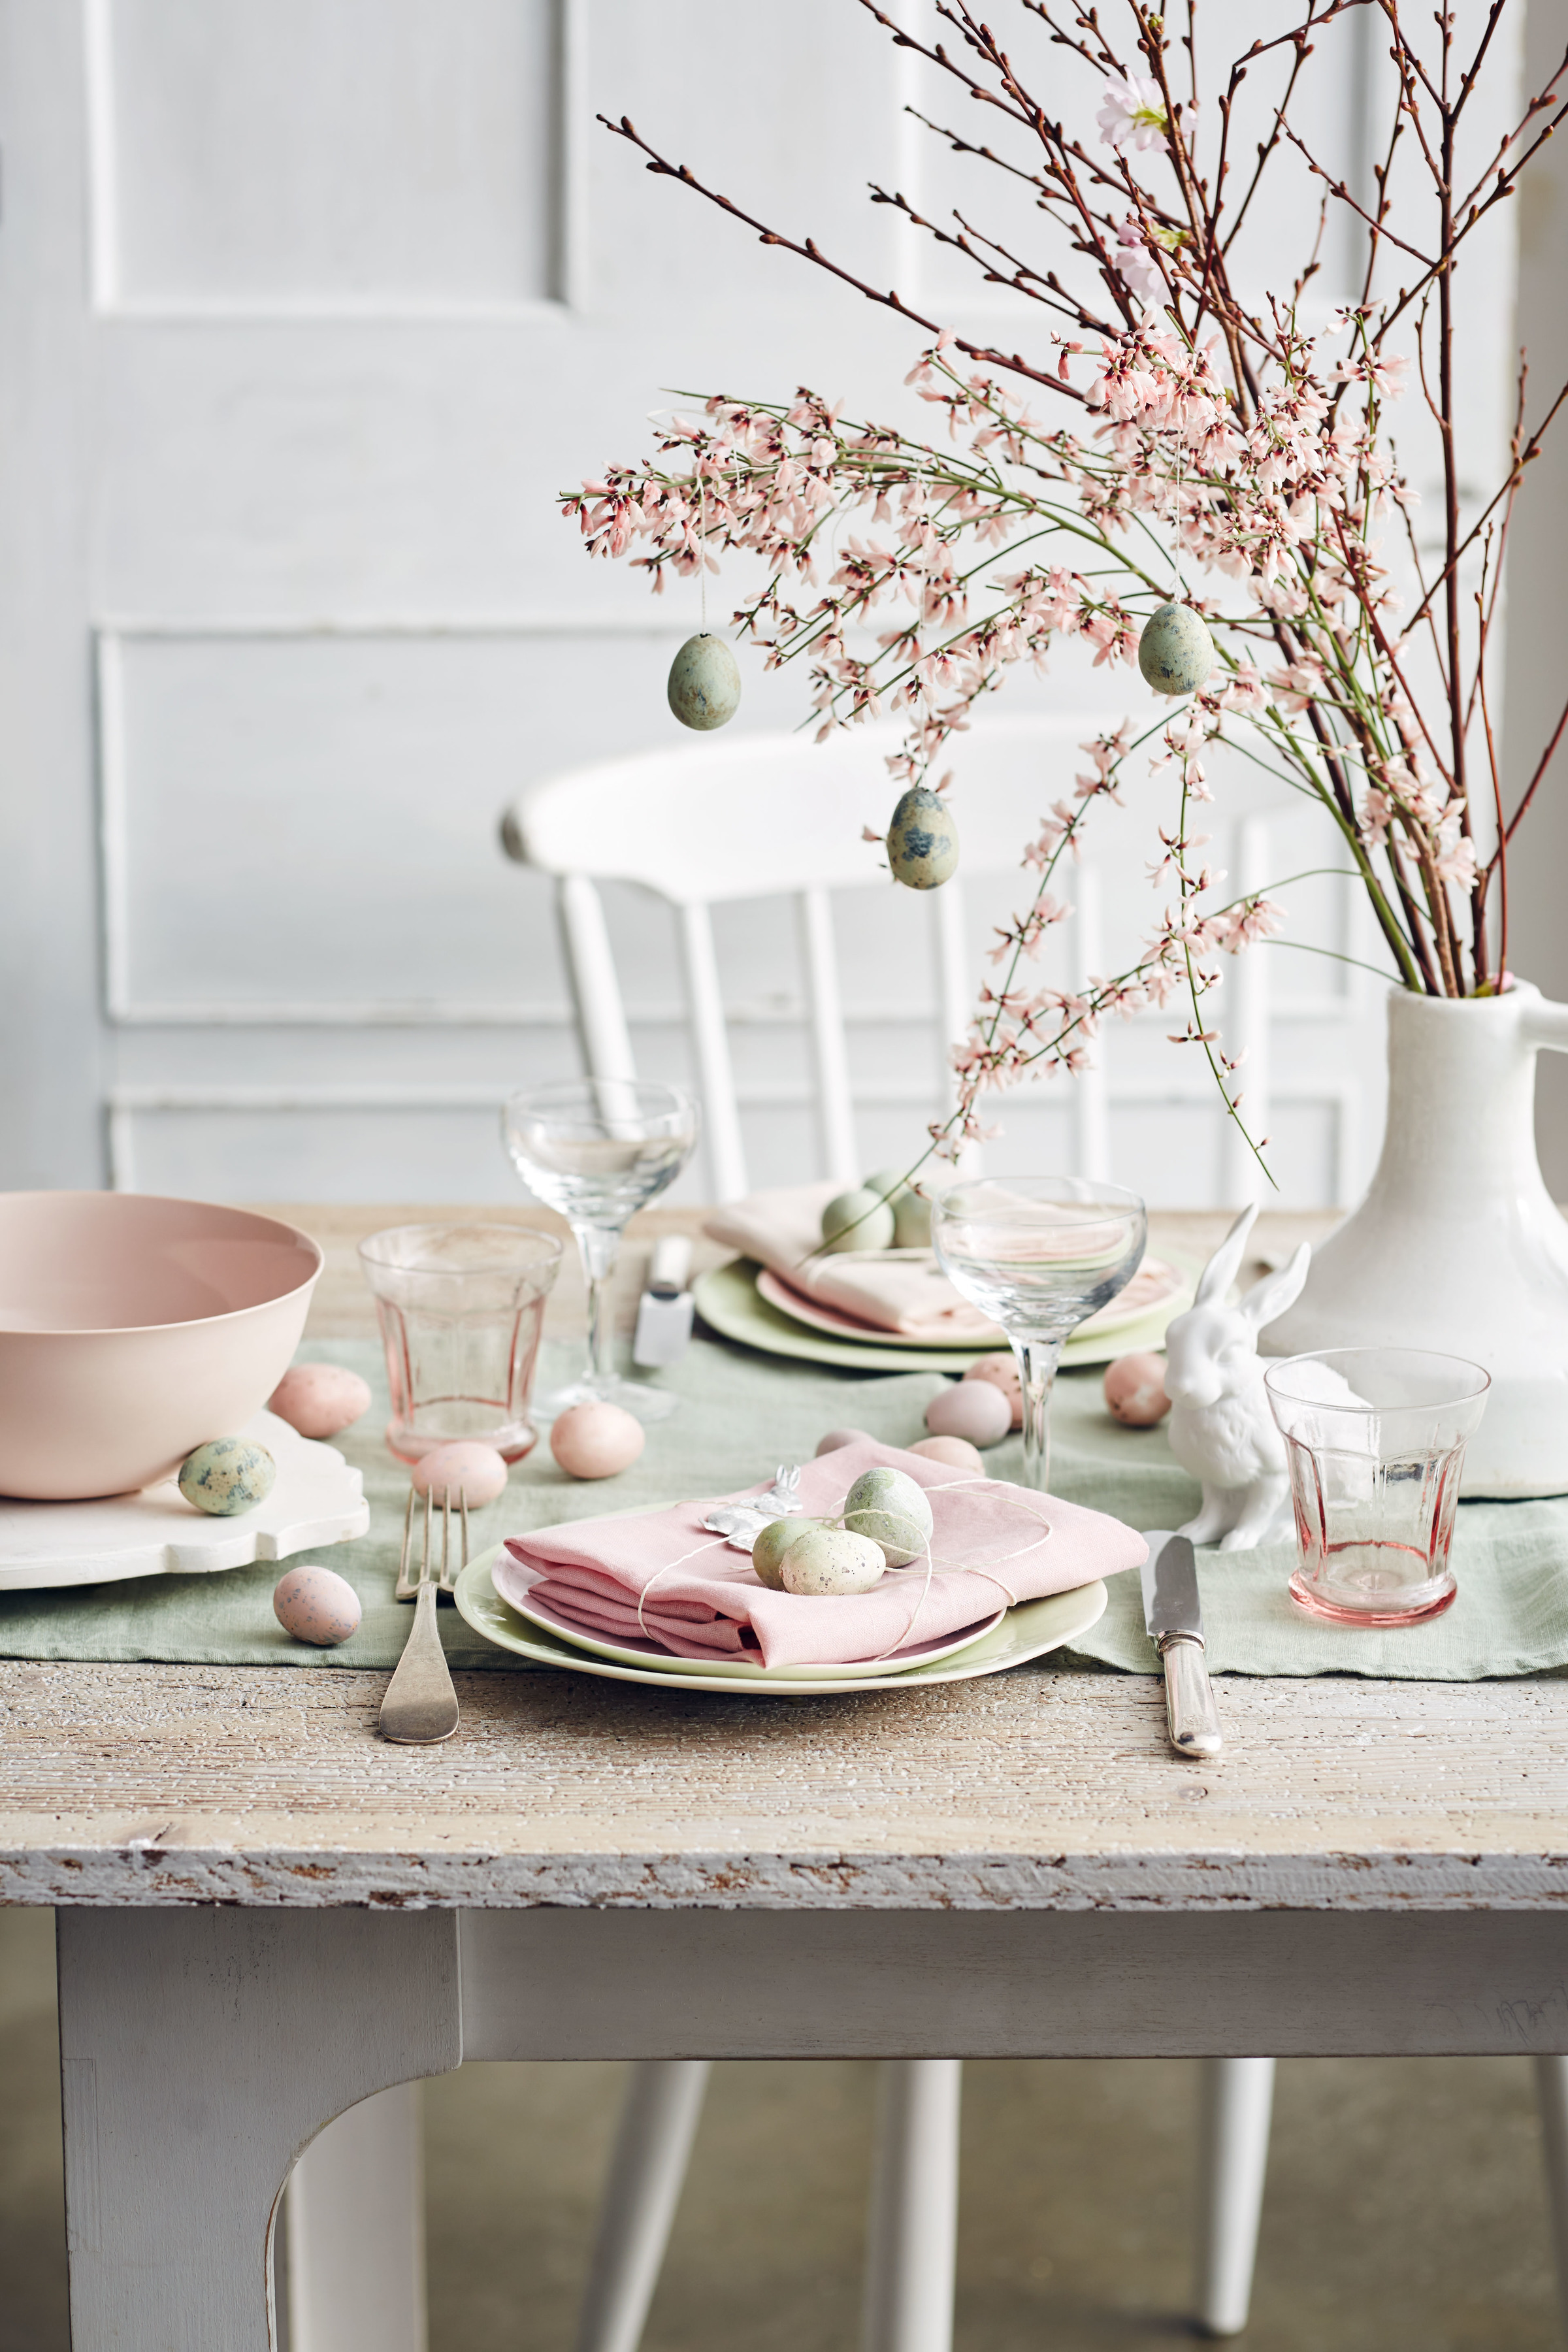 The Easter Decorations I'm Eyeing | lark & linen